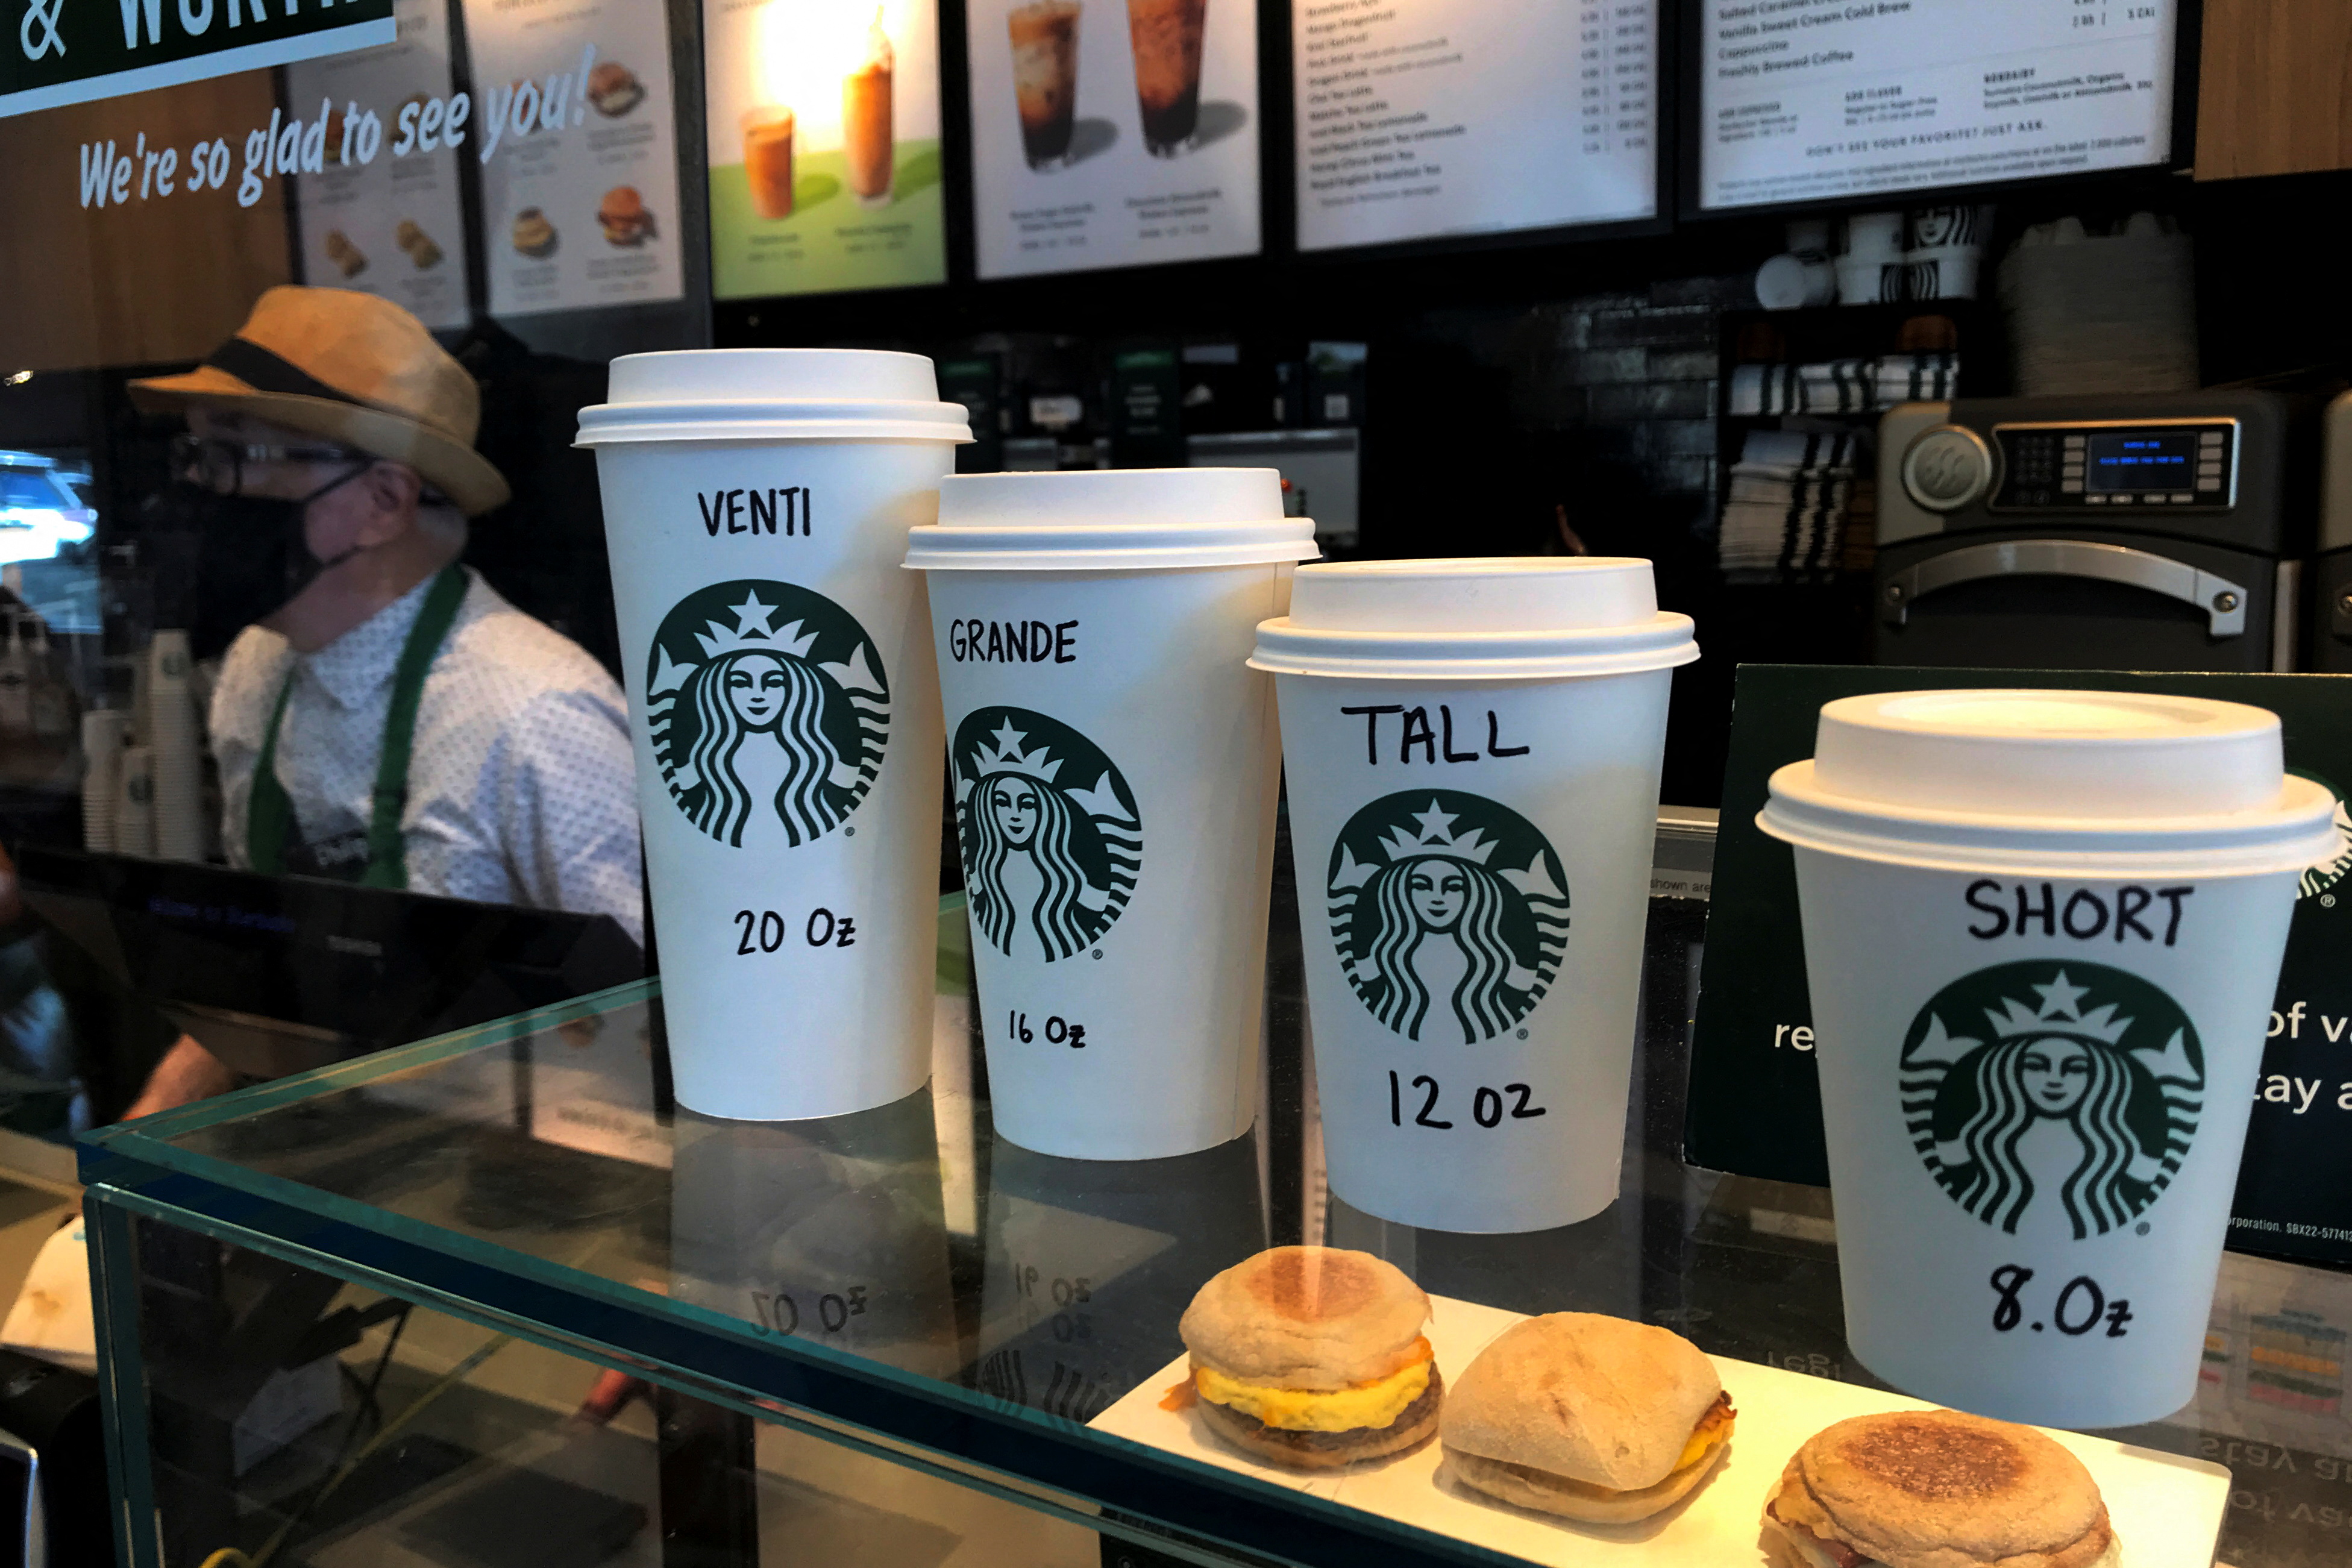 Tazas de Starbucks se muestran en un mostrador en el barrio de Manhattan de la ciudad de Nueva York, Nueva York, Estados Unidos, 16 de febrero de 2022. REUTERS/Carlo Allegri